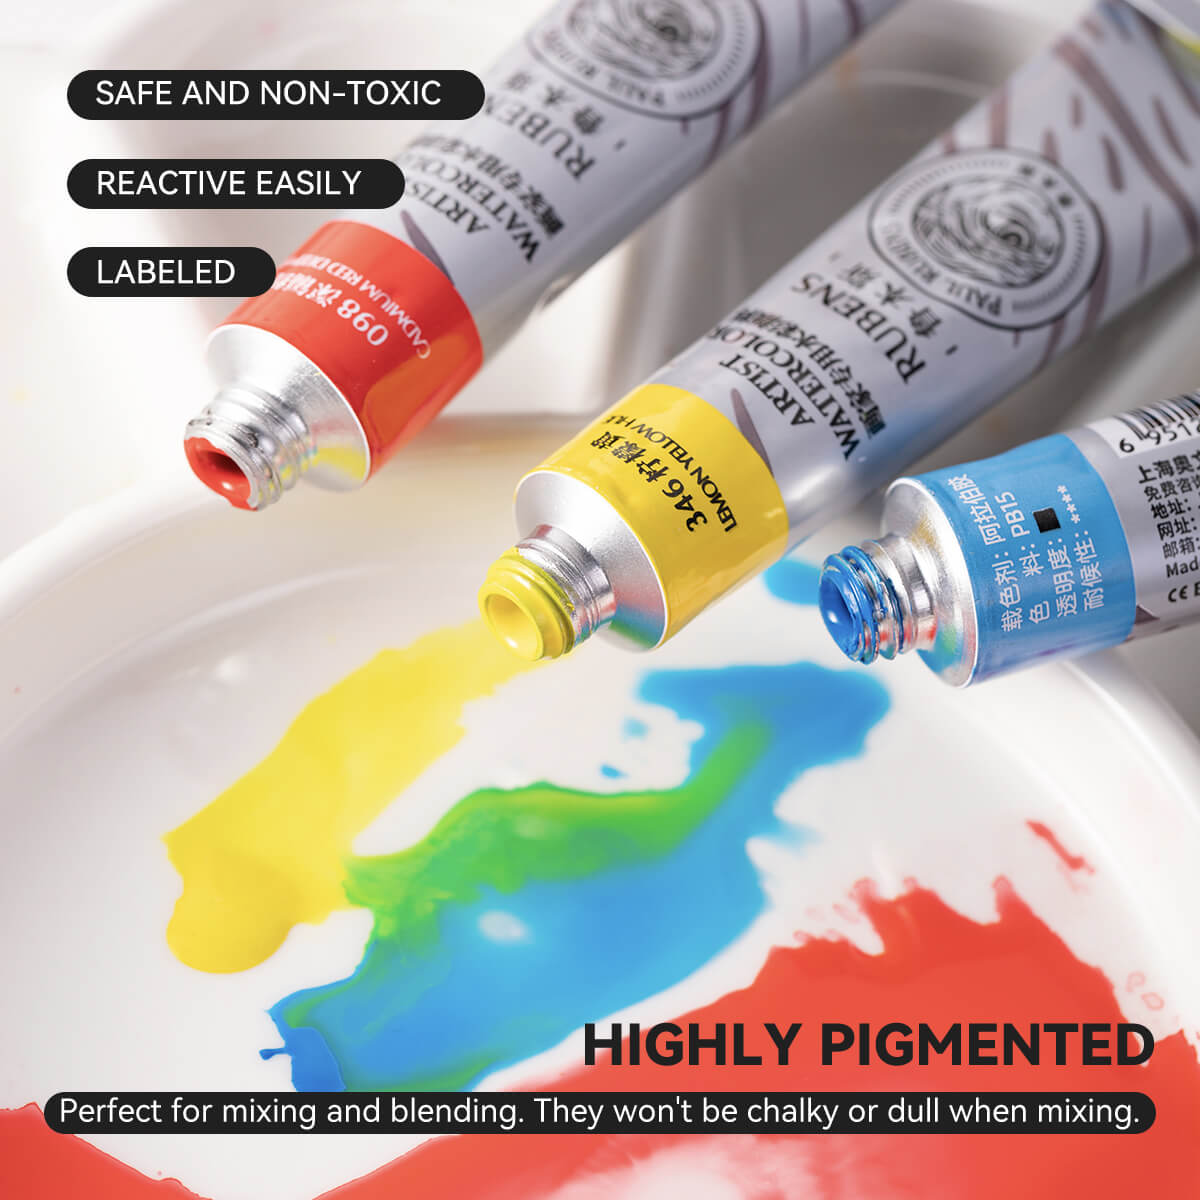 Paul Rubens QIAOMEI Watercolor Paint Set 24 Vibrant Colors 12ml / 0.4 Fl Oz Tubes